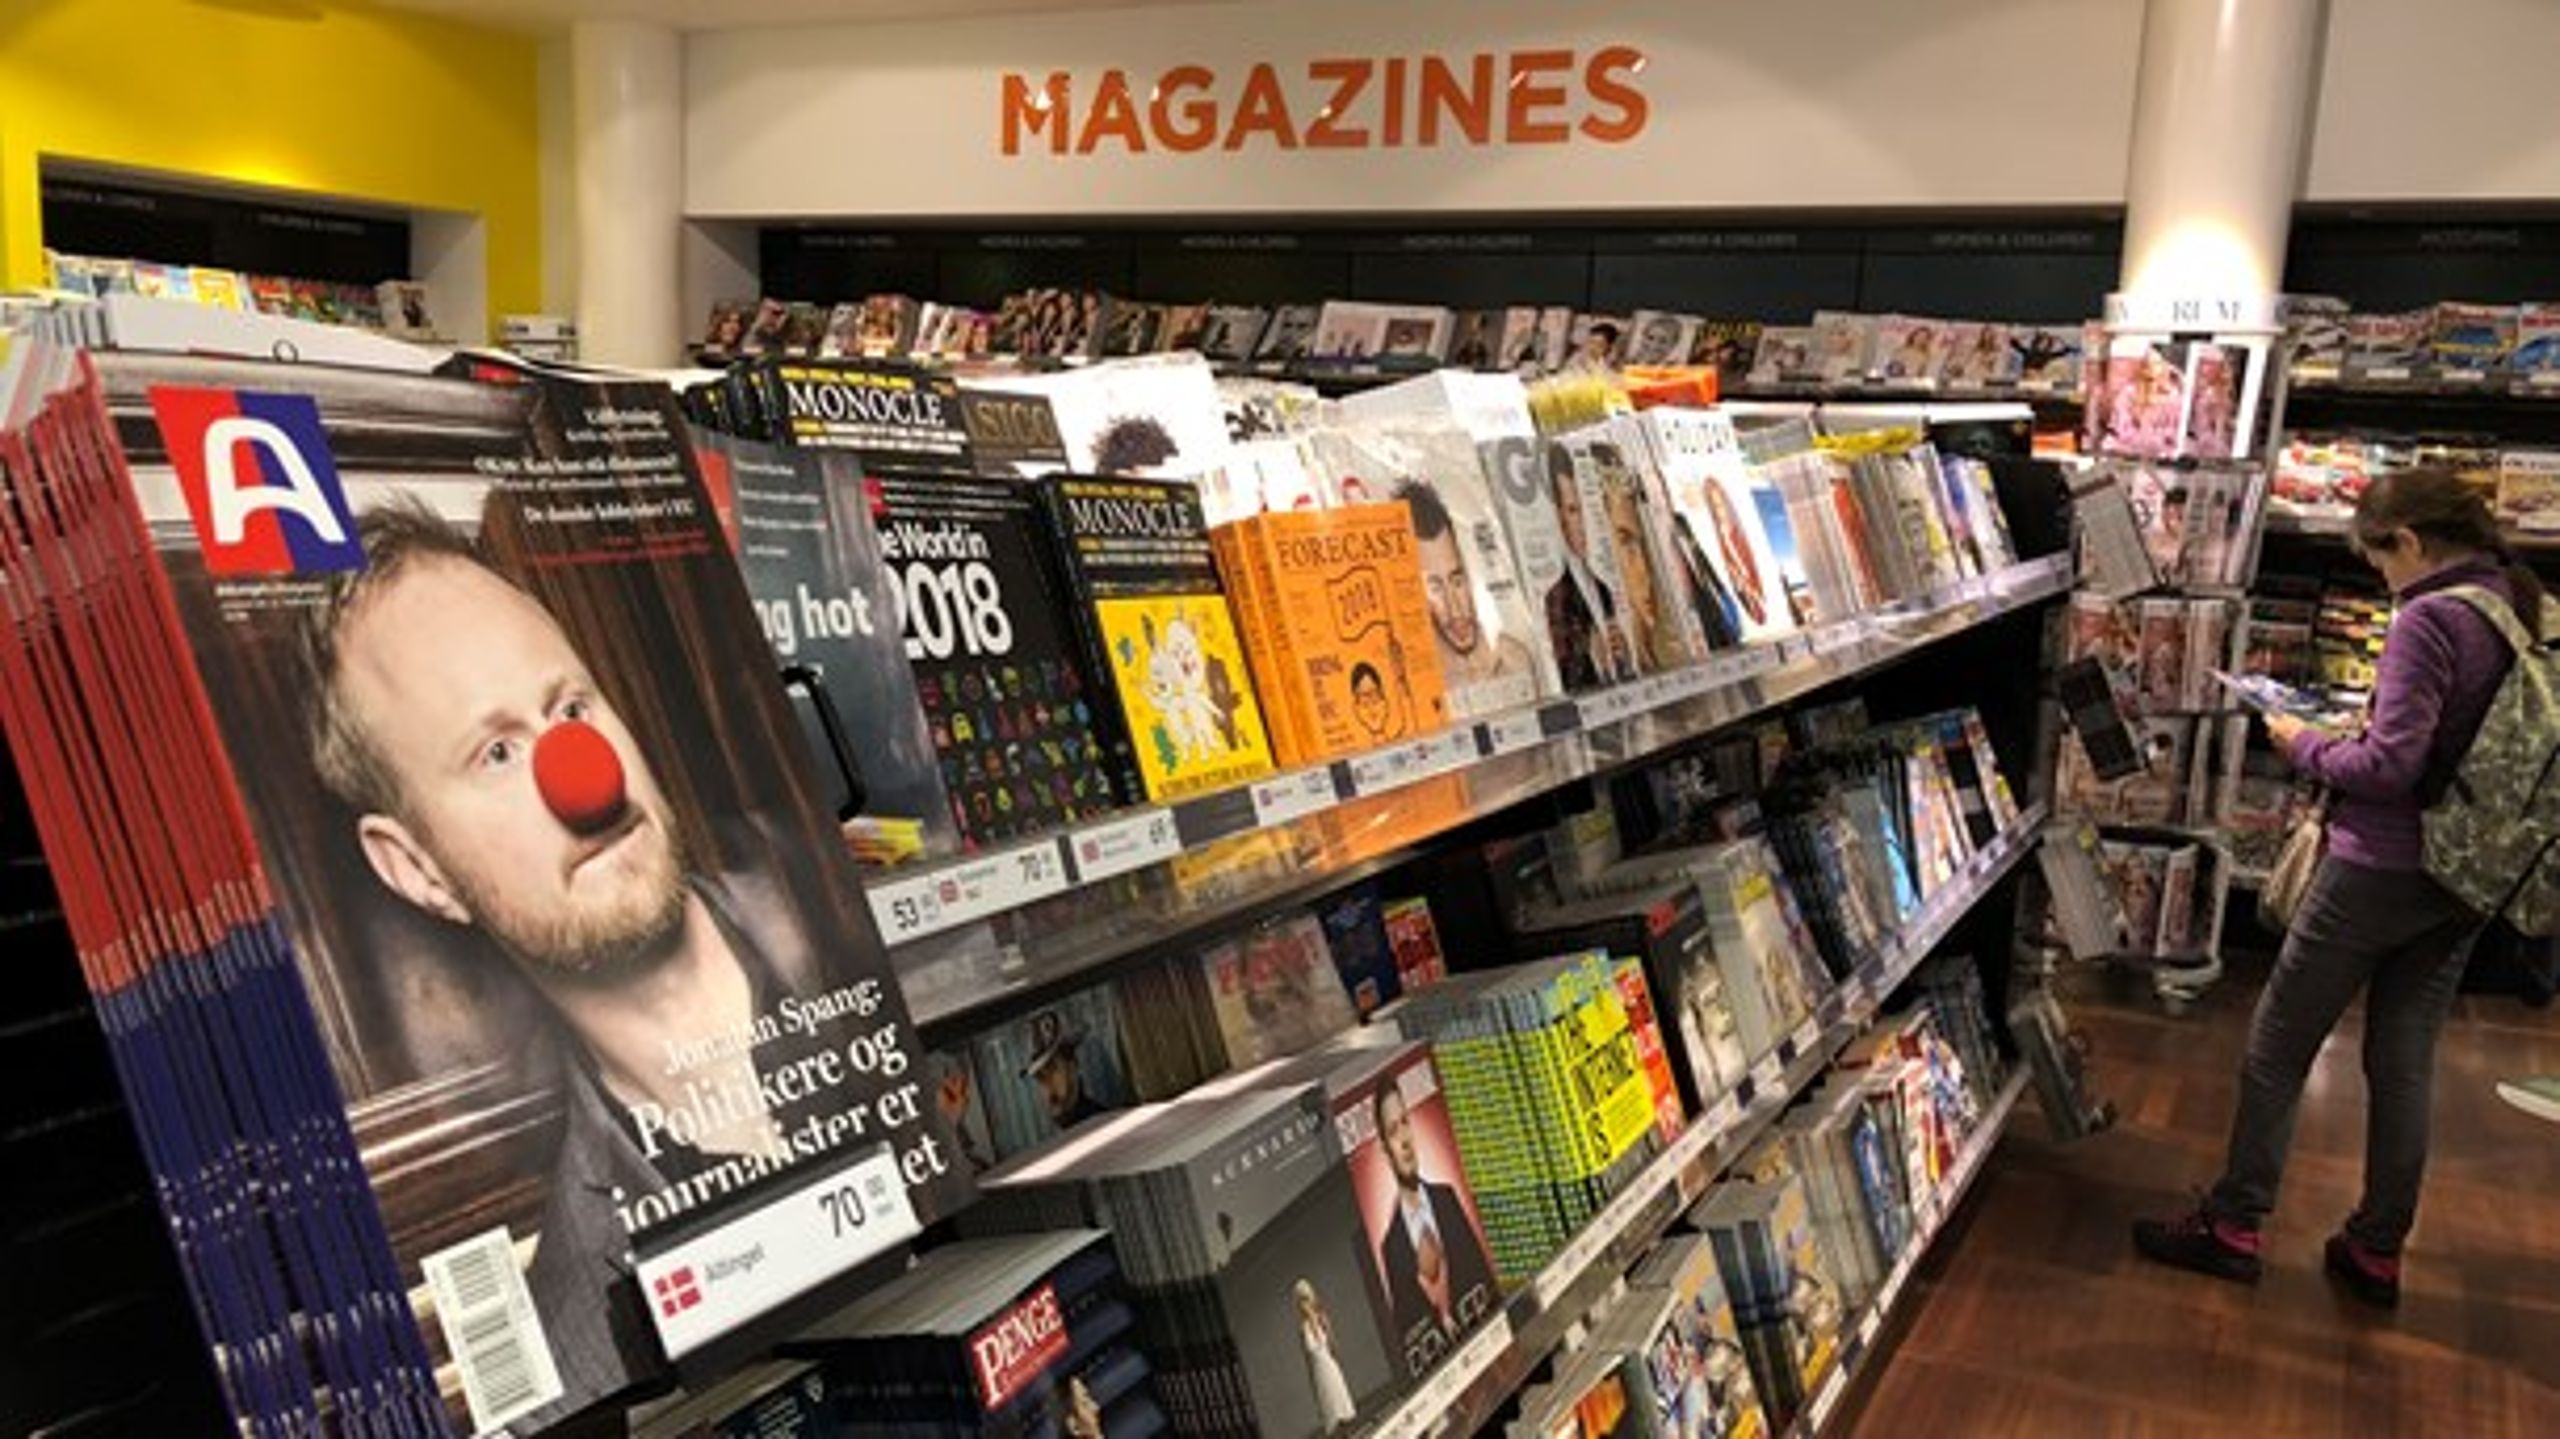 Altinget: magasin til salg i Københavns Lufthavne februar 2018